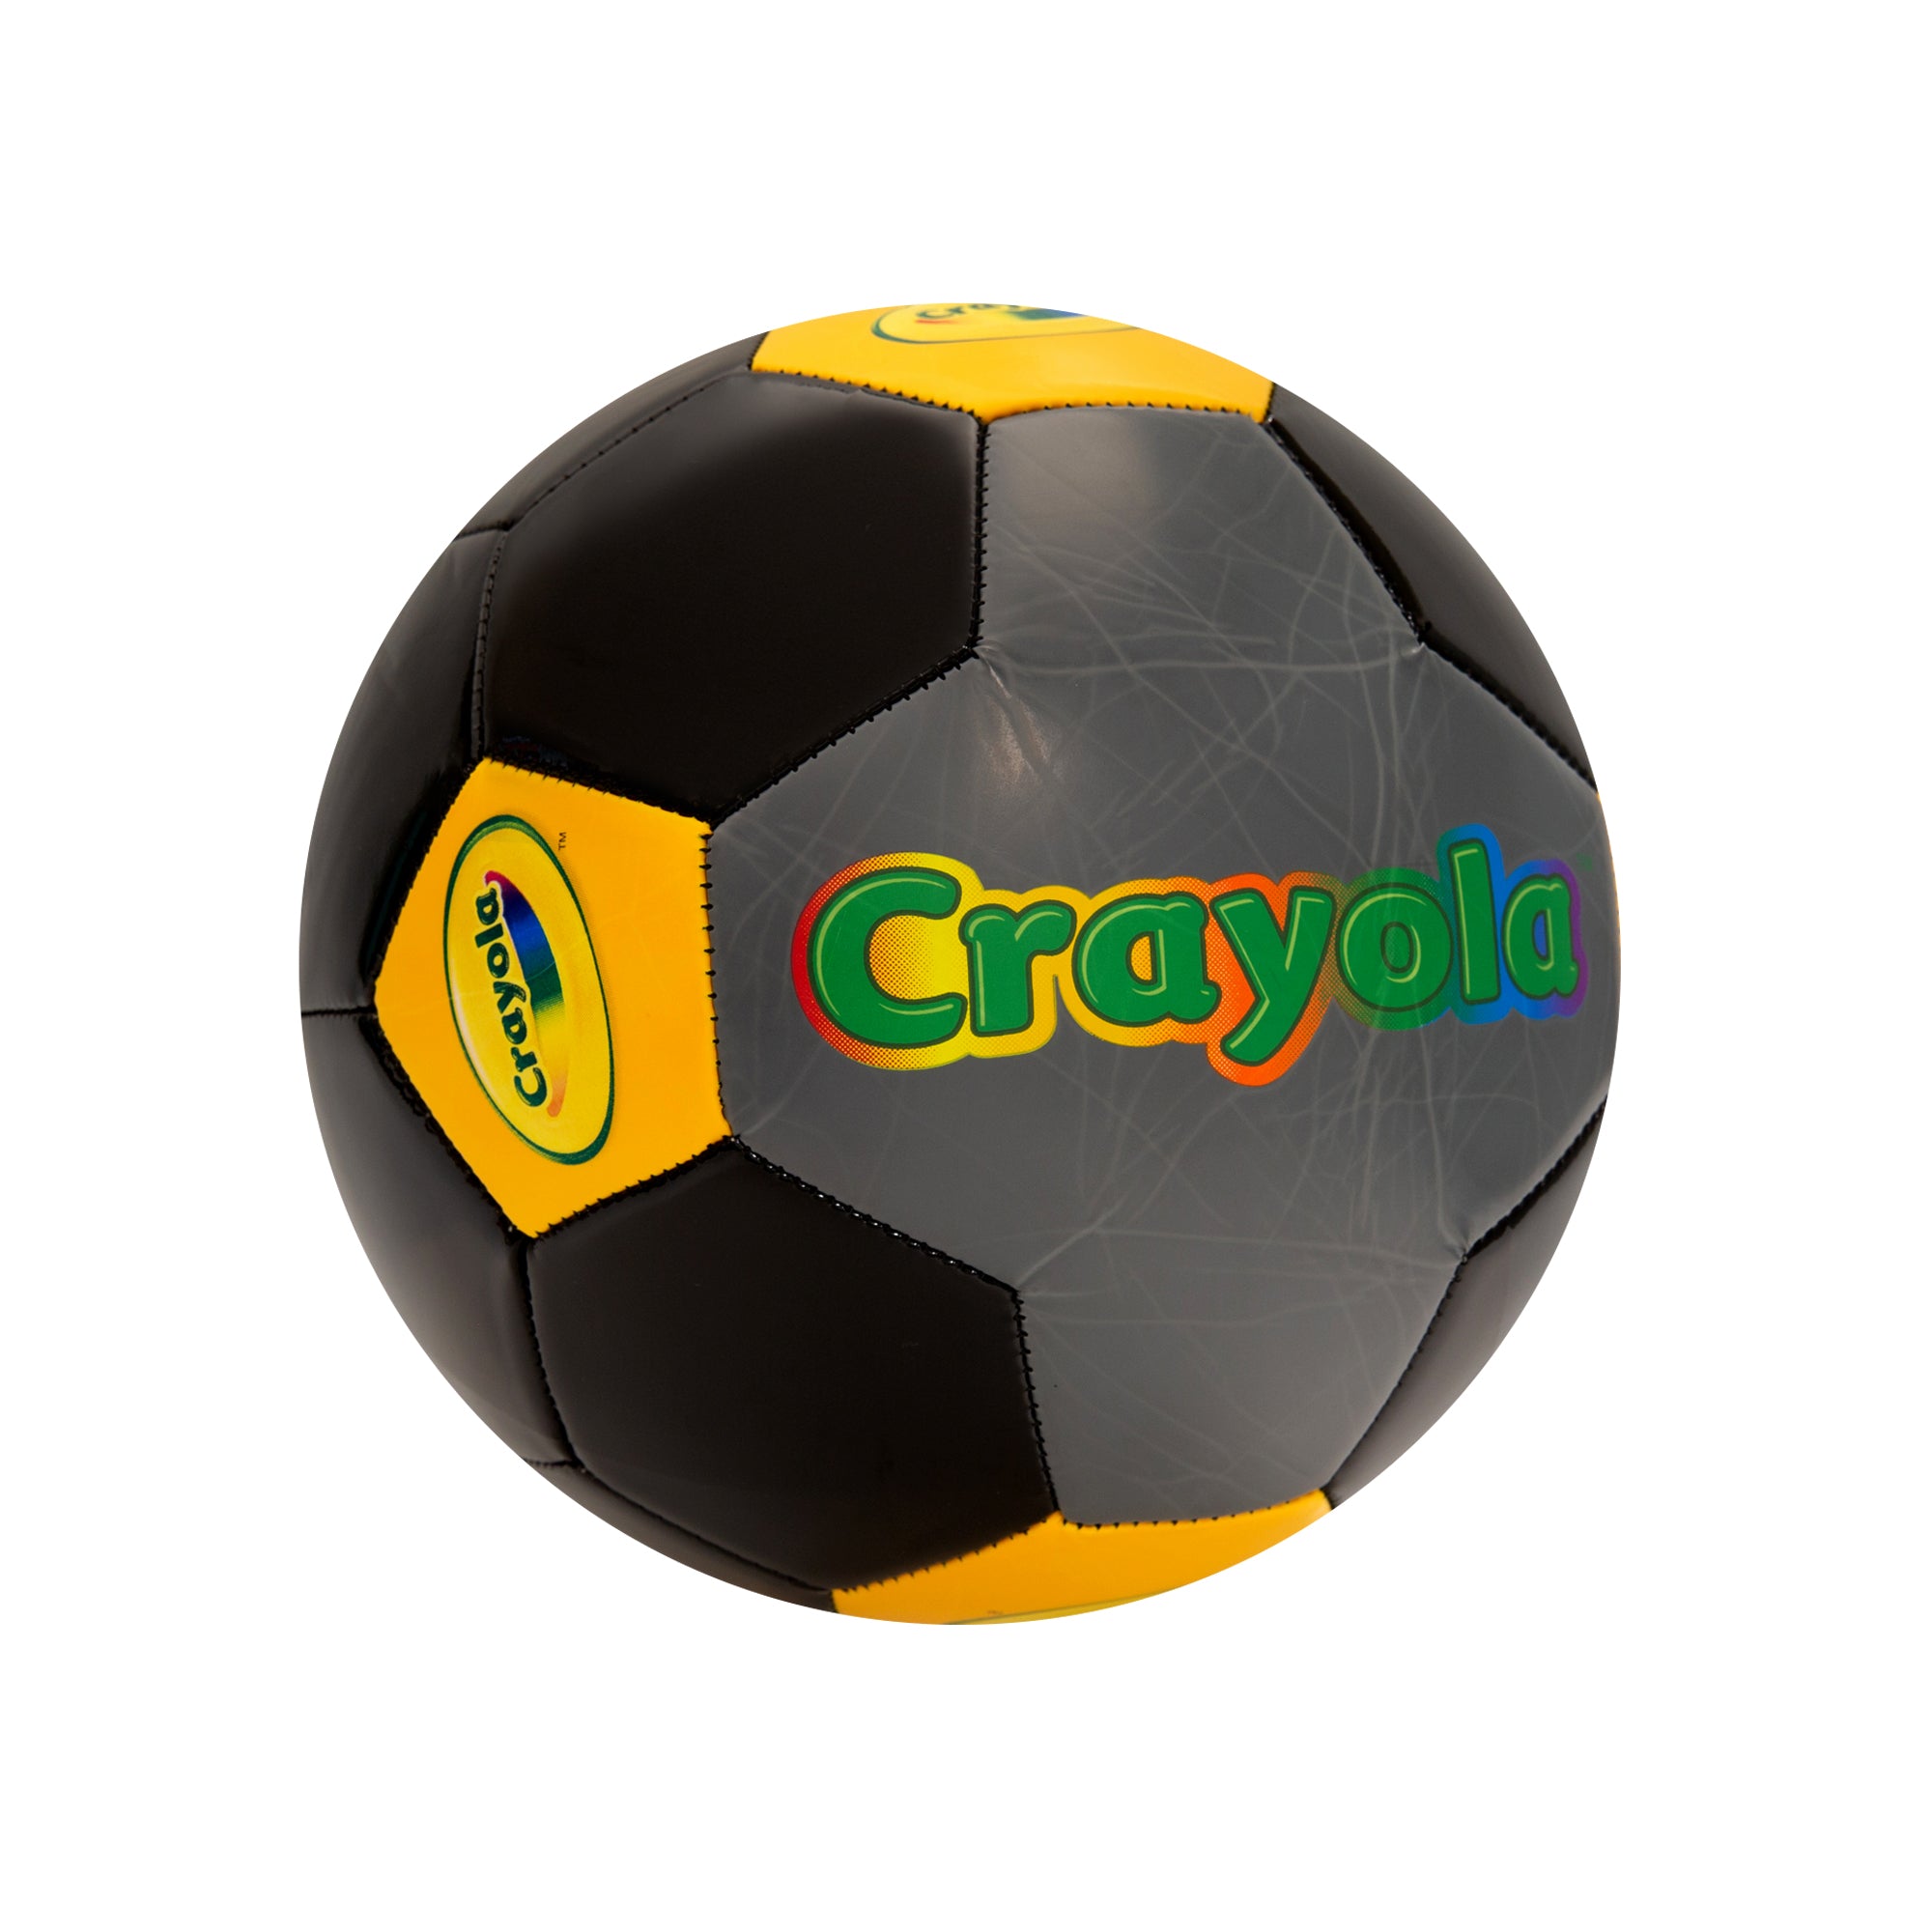 Crayola Color Block Soccer Ball